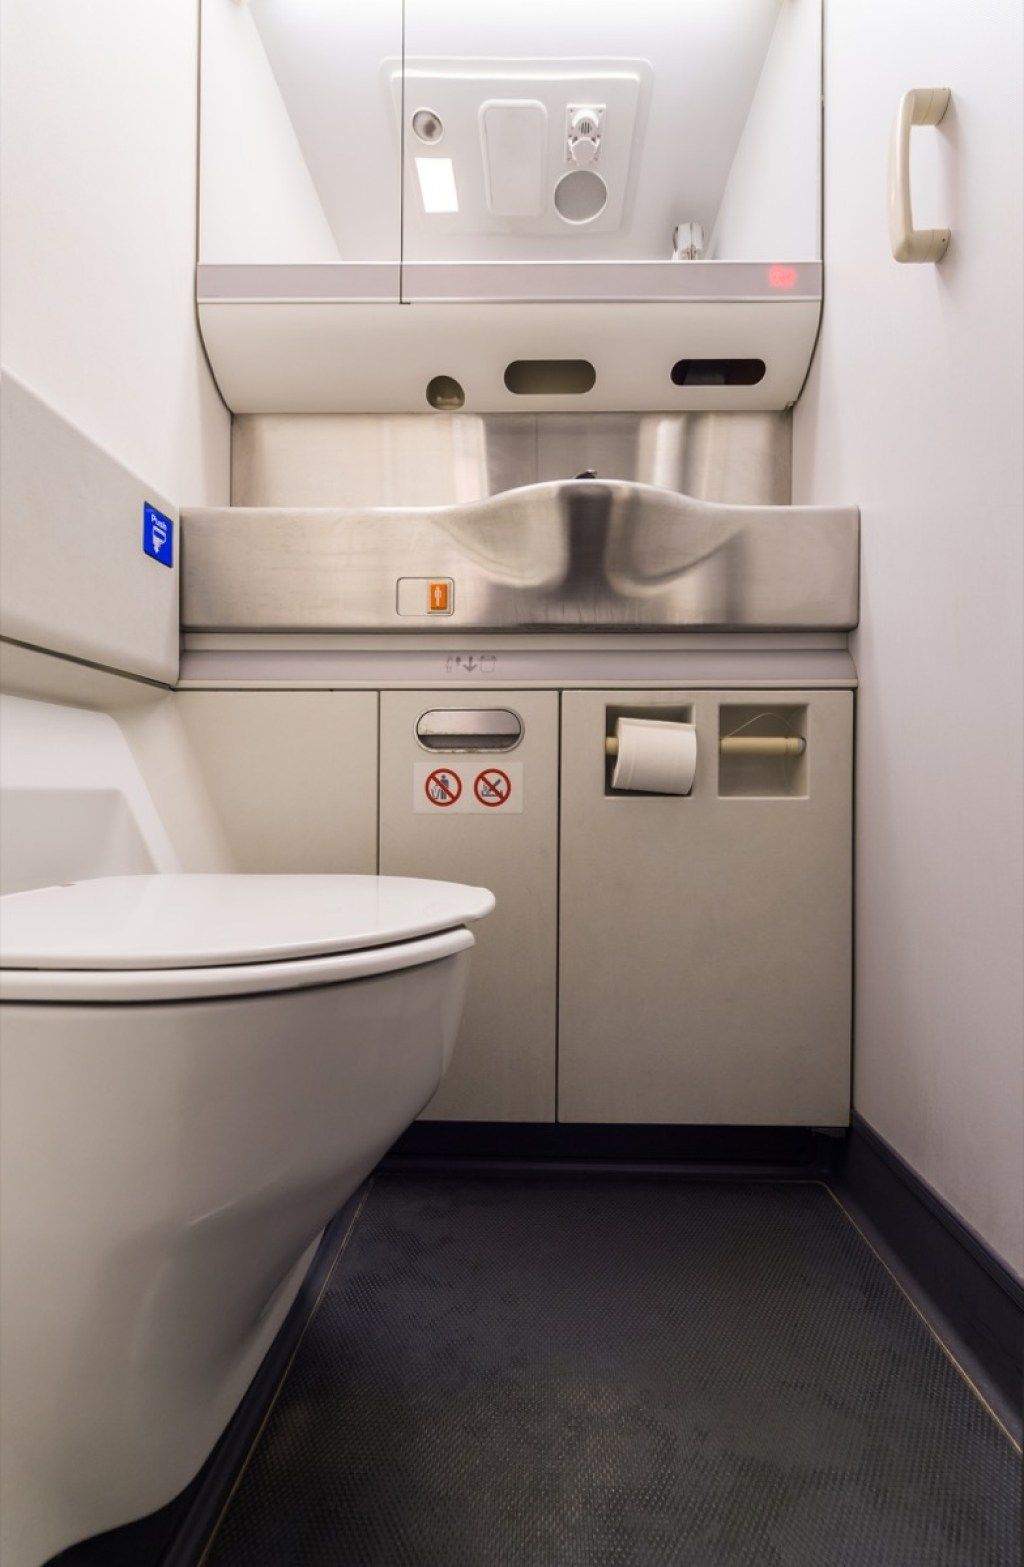 हवाई जहाज के बाथरूम की चीजें जो उड़ान परिचारिकाओं को भयभीत करती हैं